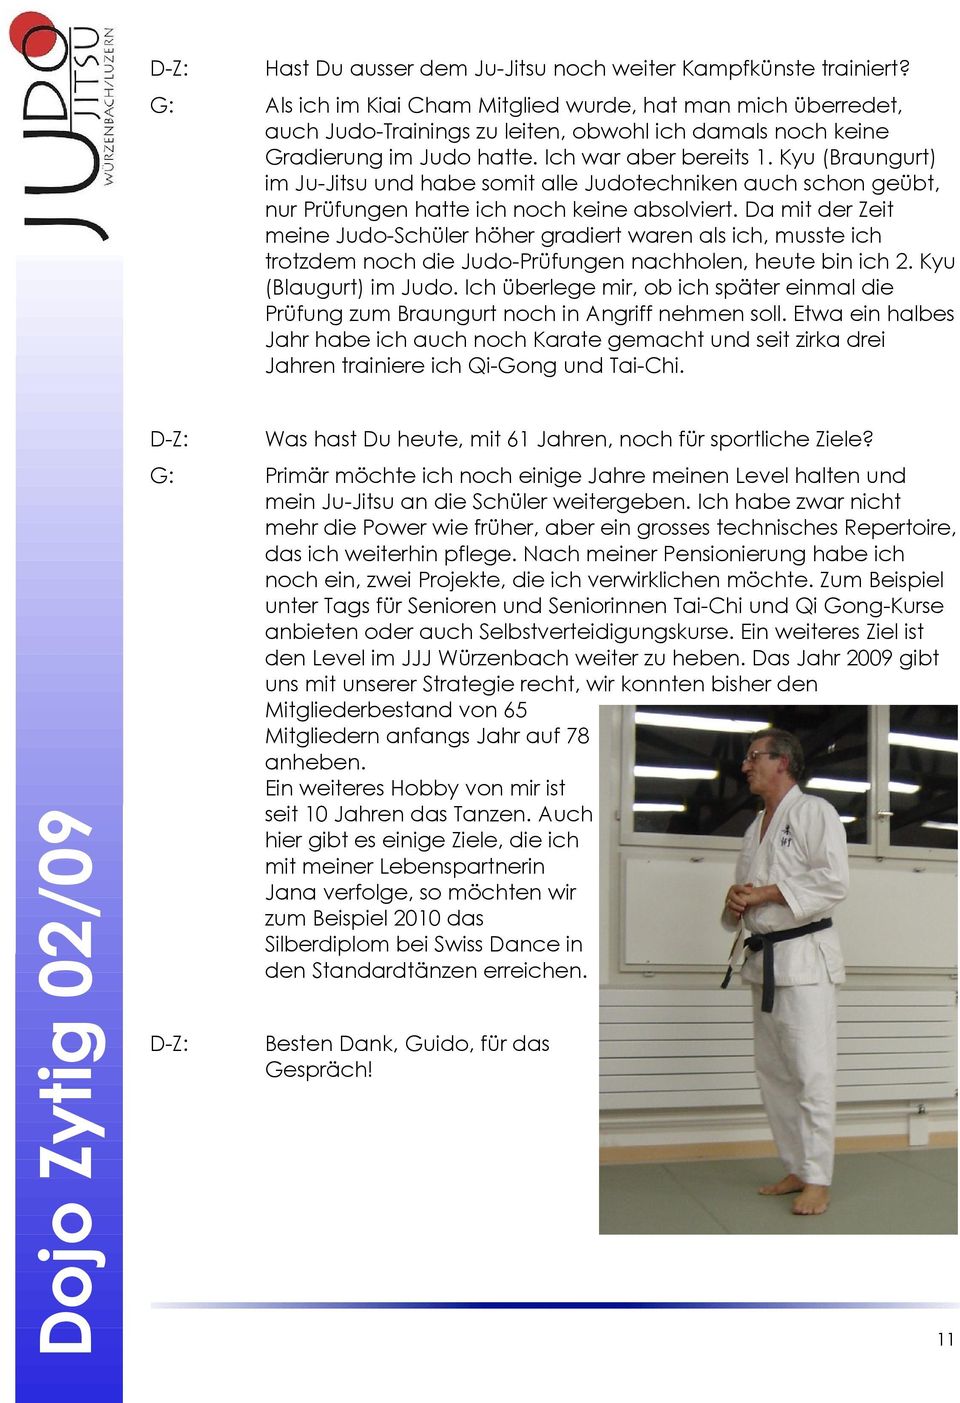 Kyu (Braungurt) im Ju-Jitsu und habe somit alle Judotechniken auch schon geübt, nur Prüfungen hatte ich noch keine absolviert.